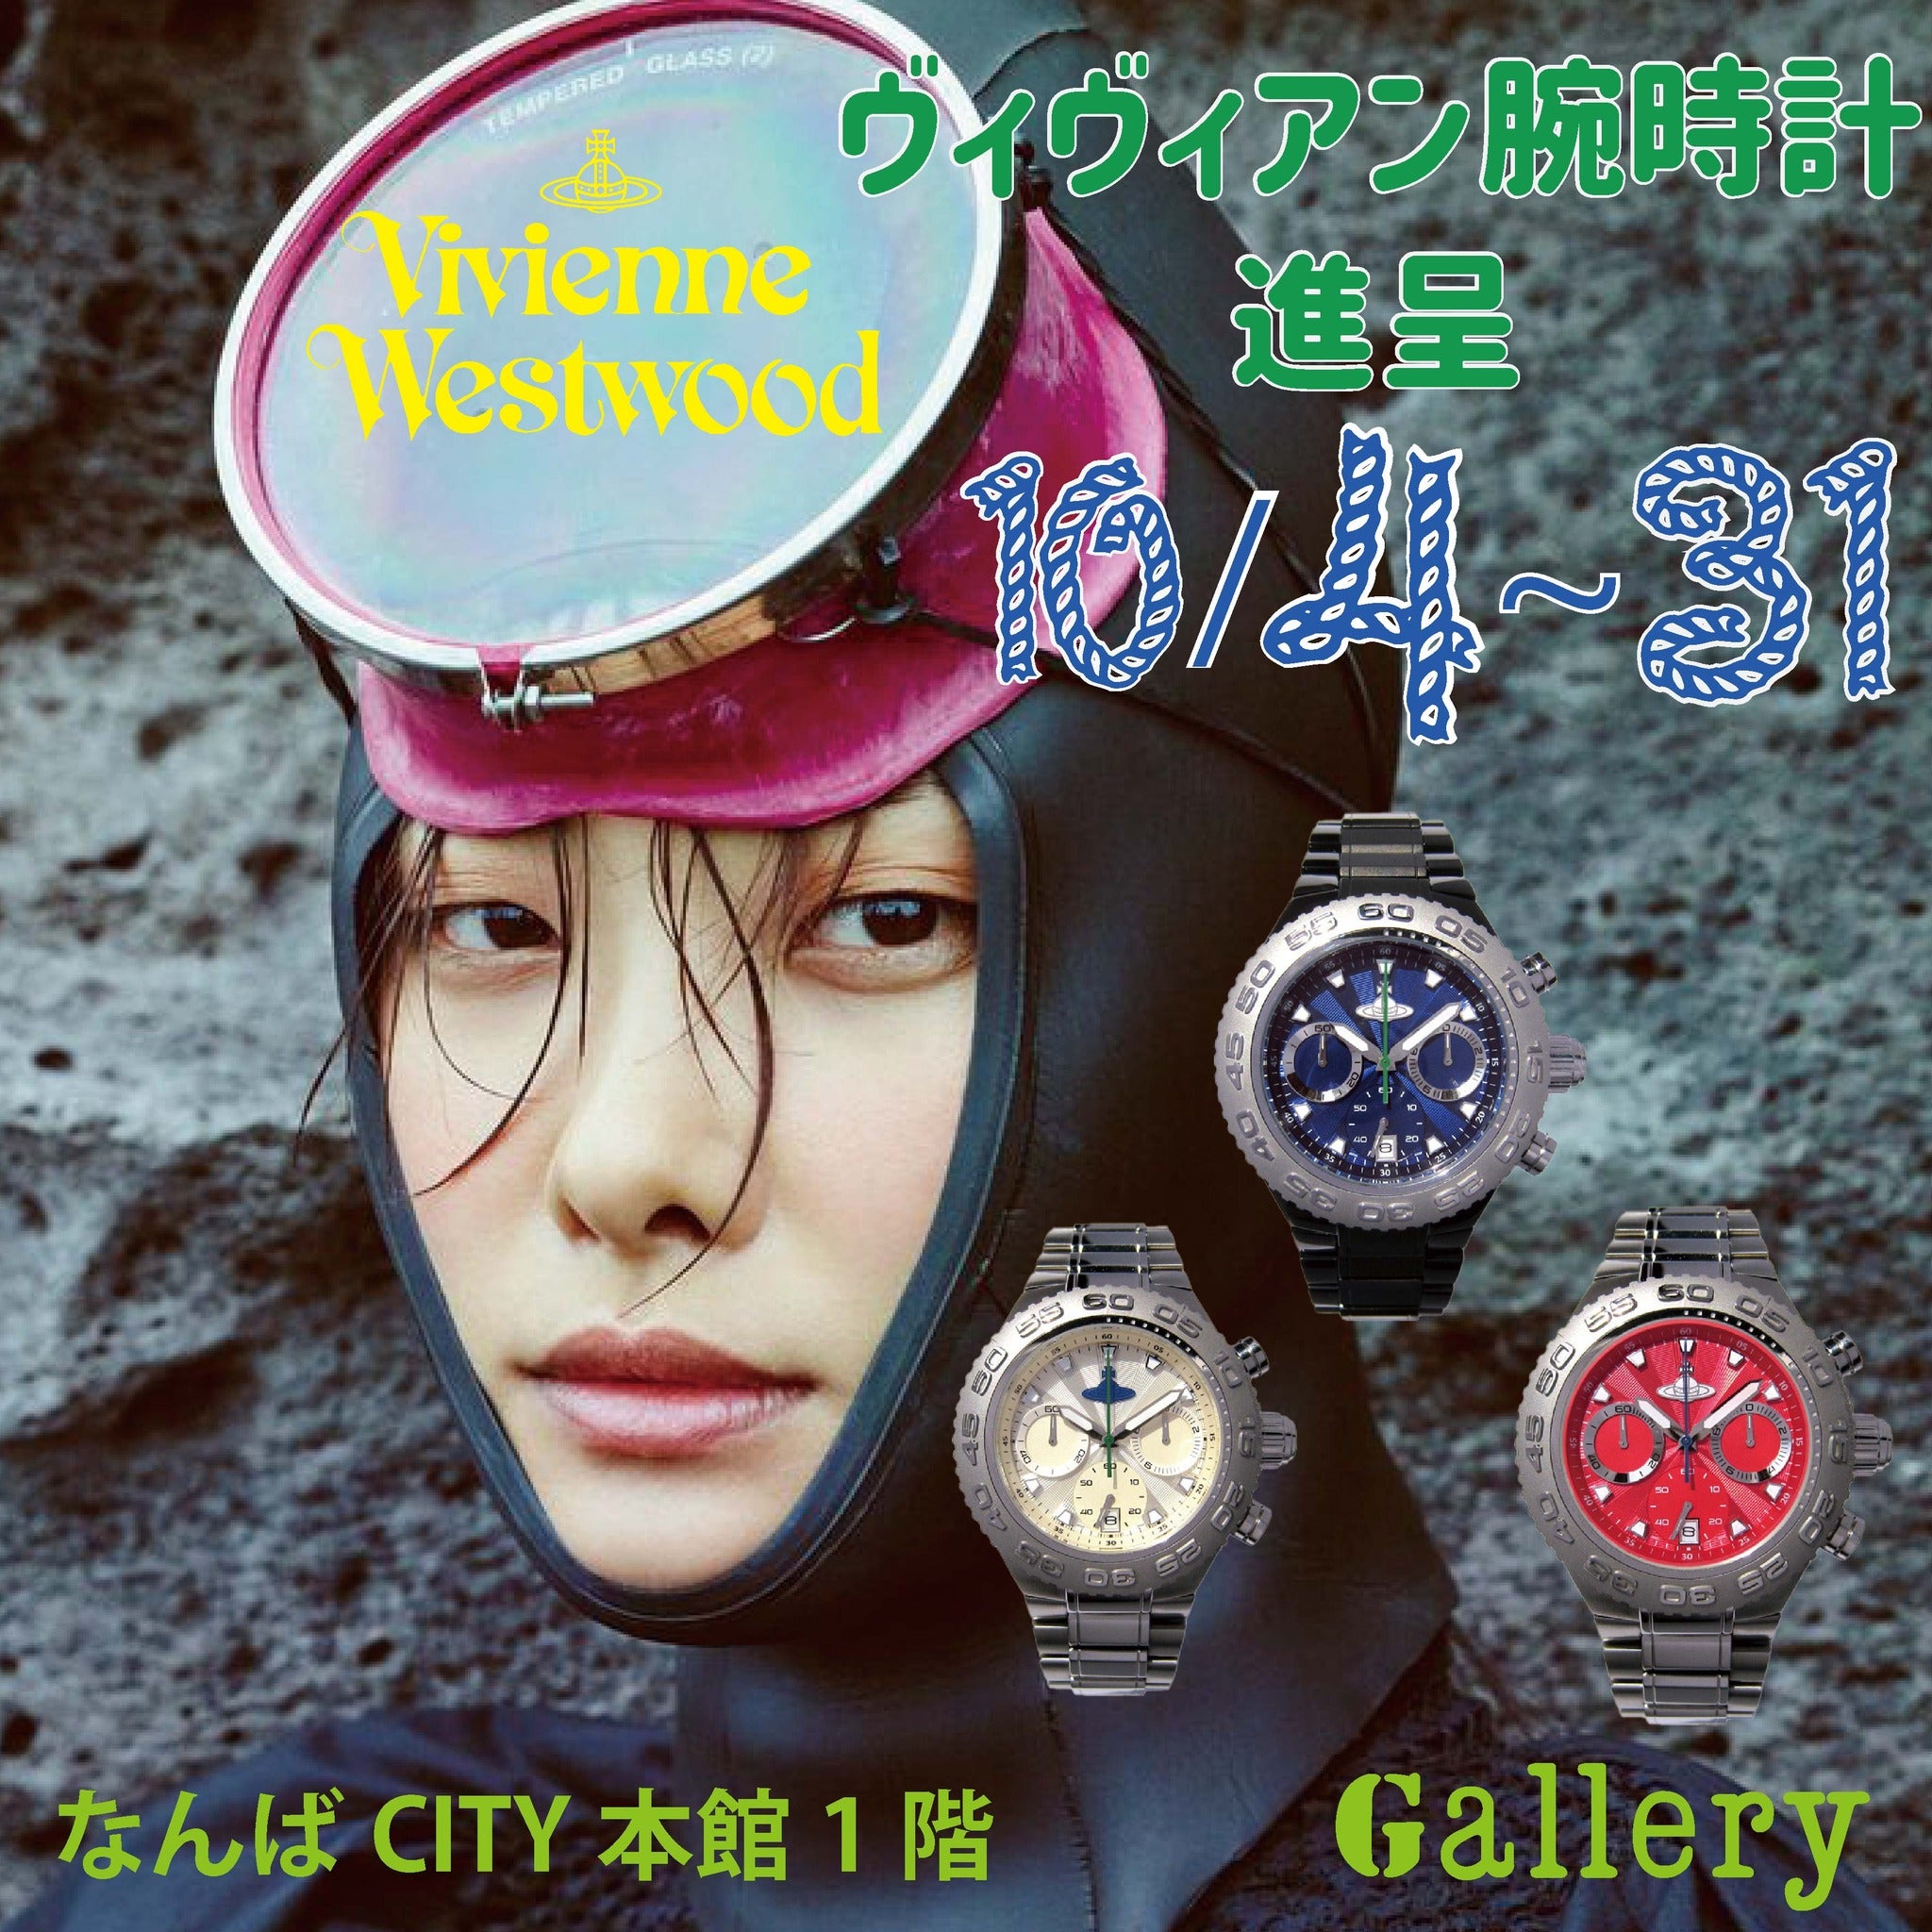 ヴィヴィアン ウエストウッド 腕時計進呈 開催期間：10/4(火)から10/31(月)まで | Galleryブログ 通販サイト→http://www.gallery-jpg.com/大阪